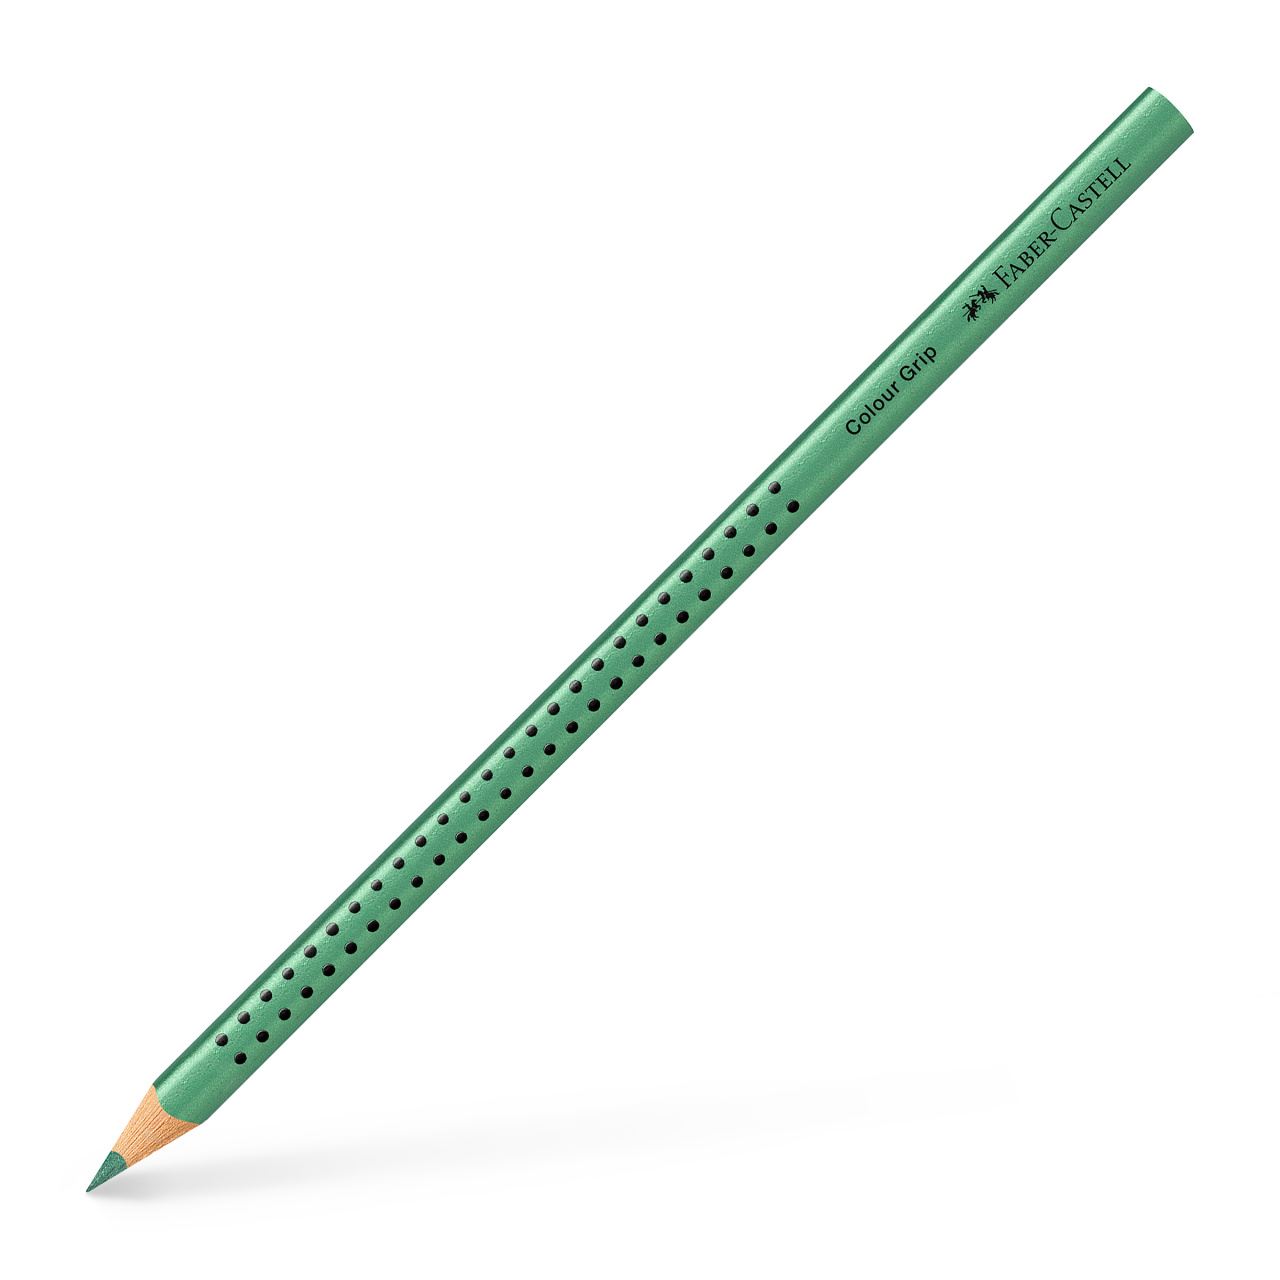 Faber-Castell - Lápiz de color Colour Grip, verde metálico